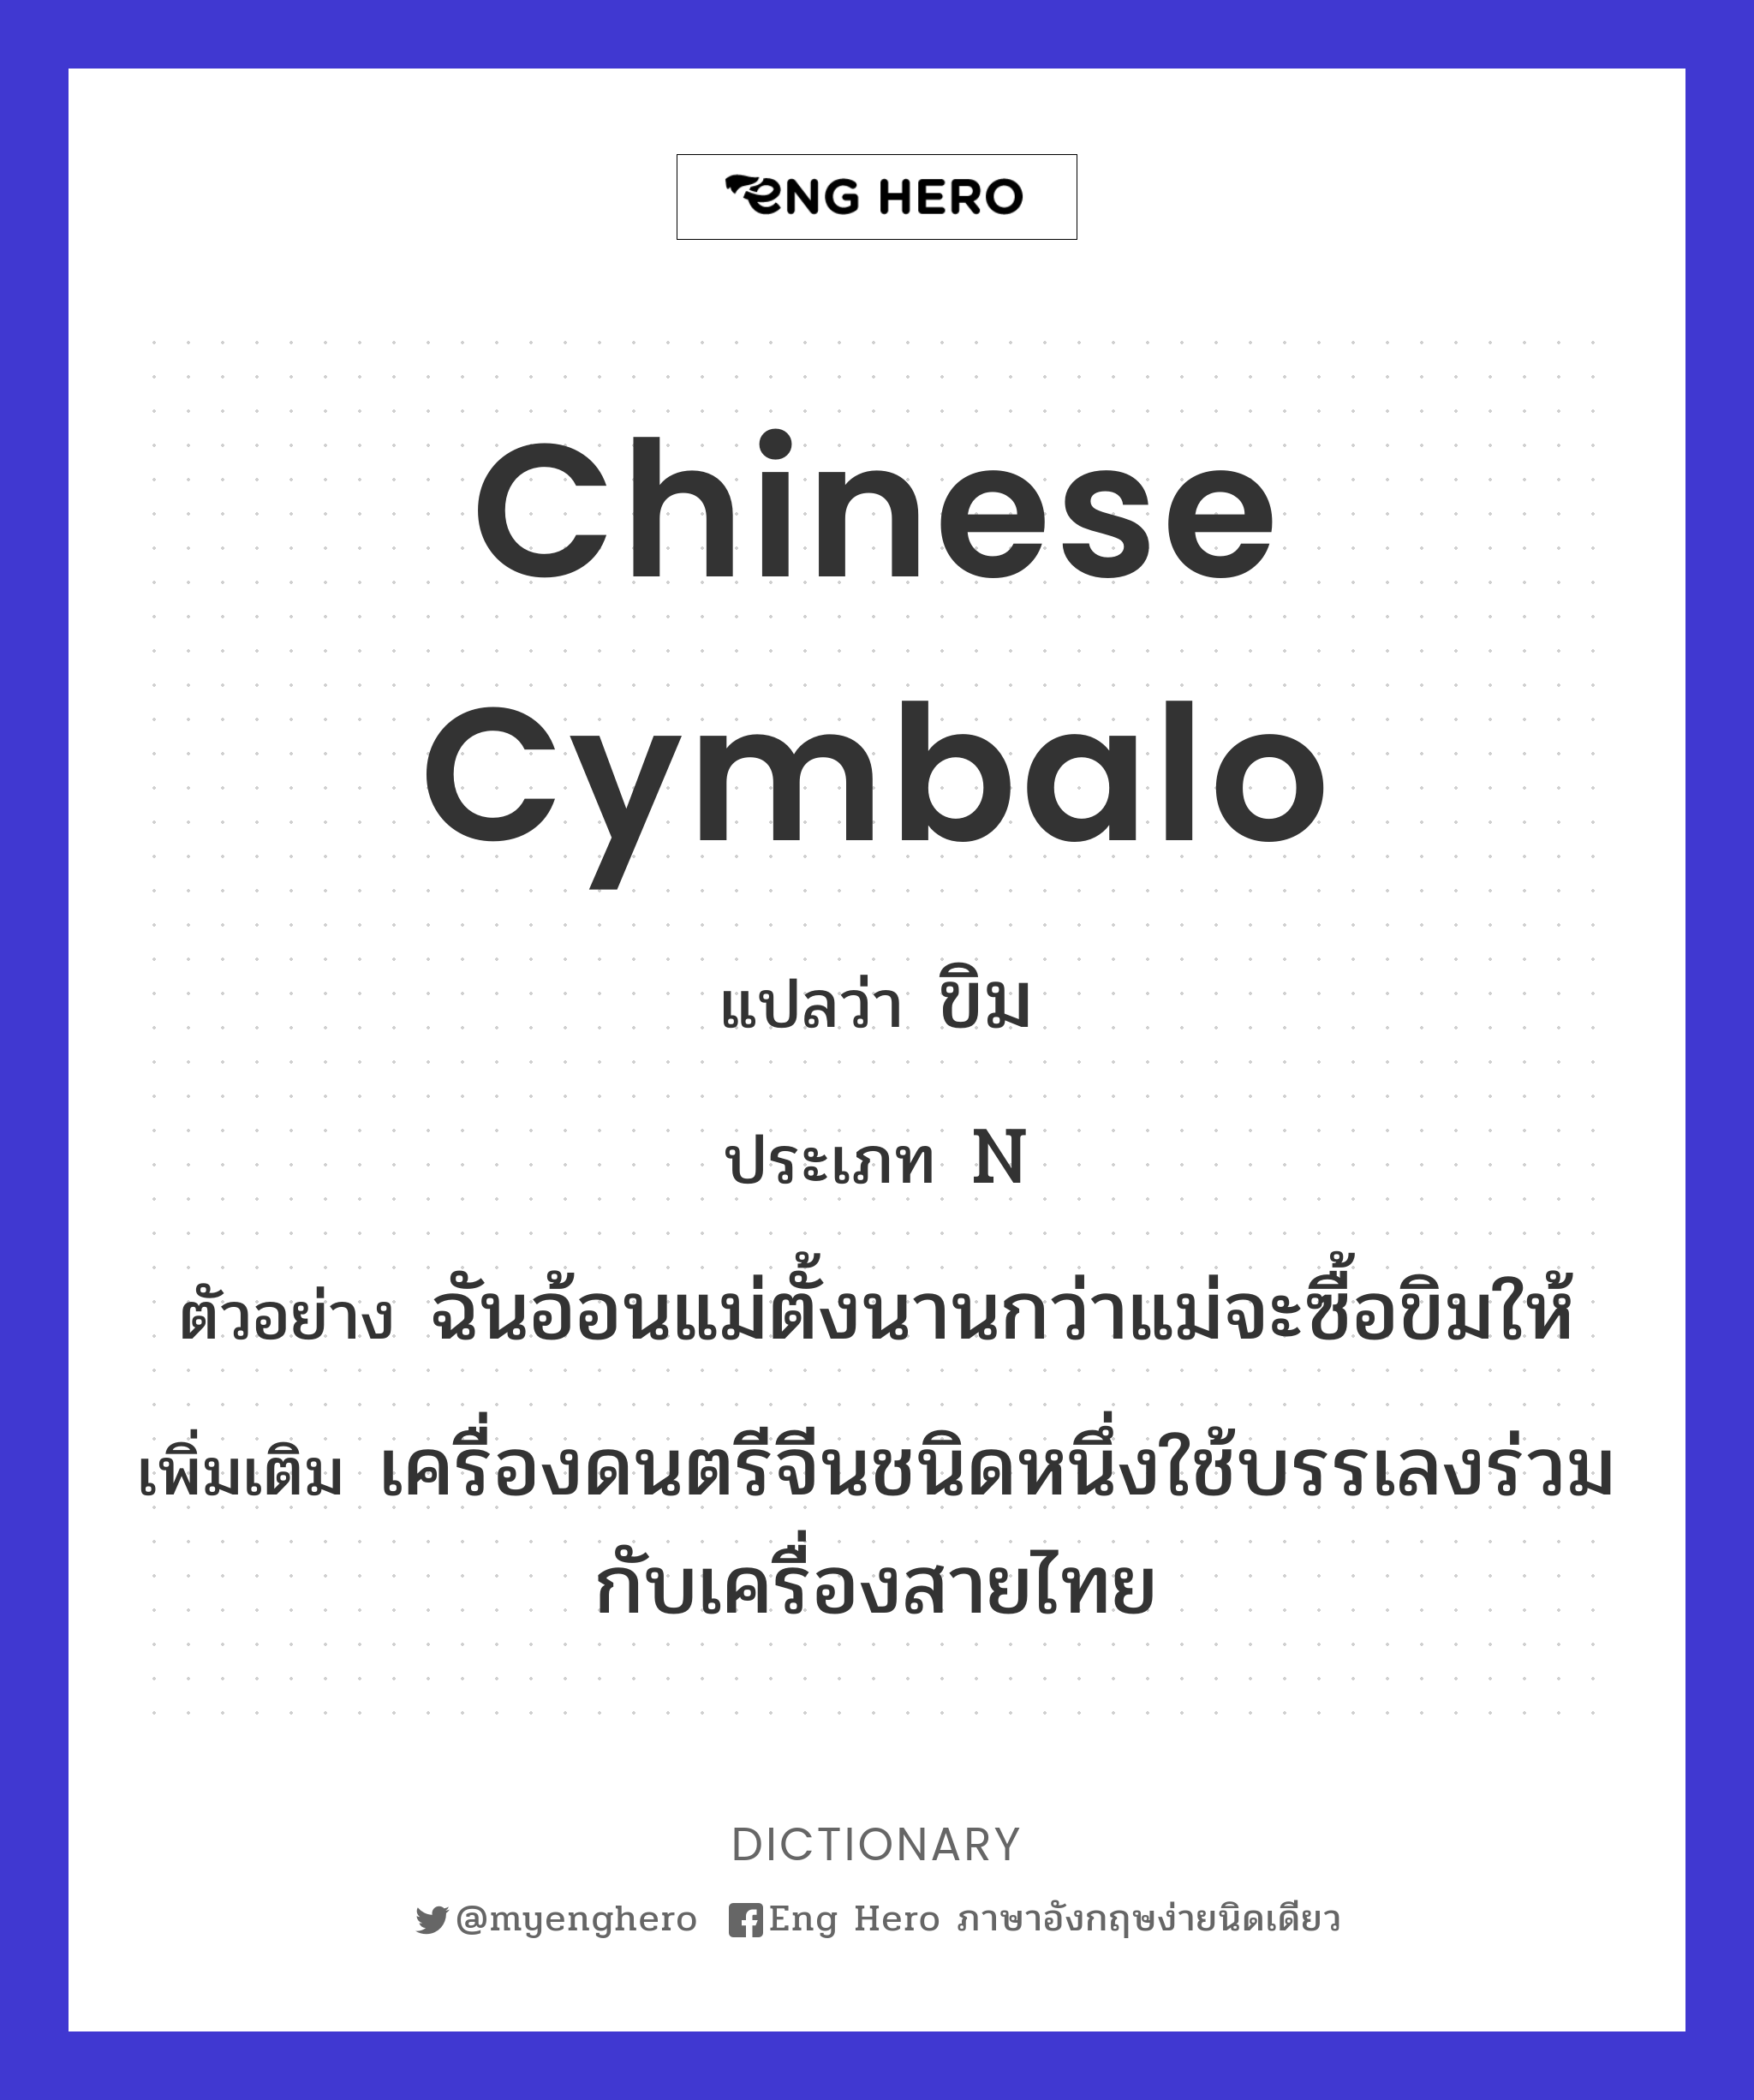 Chinese cymbalo